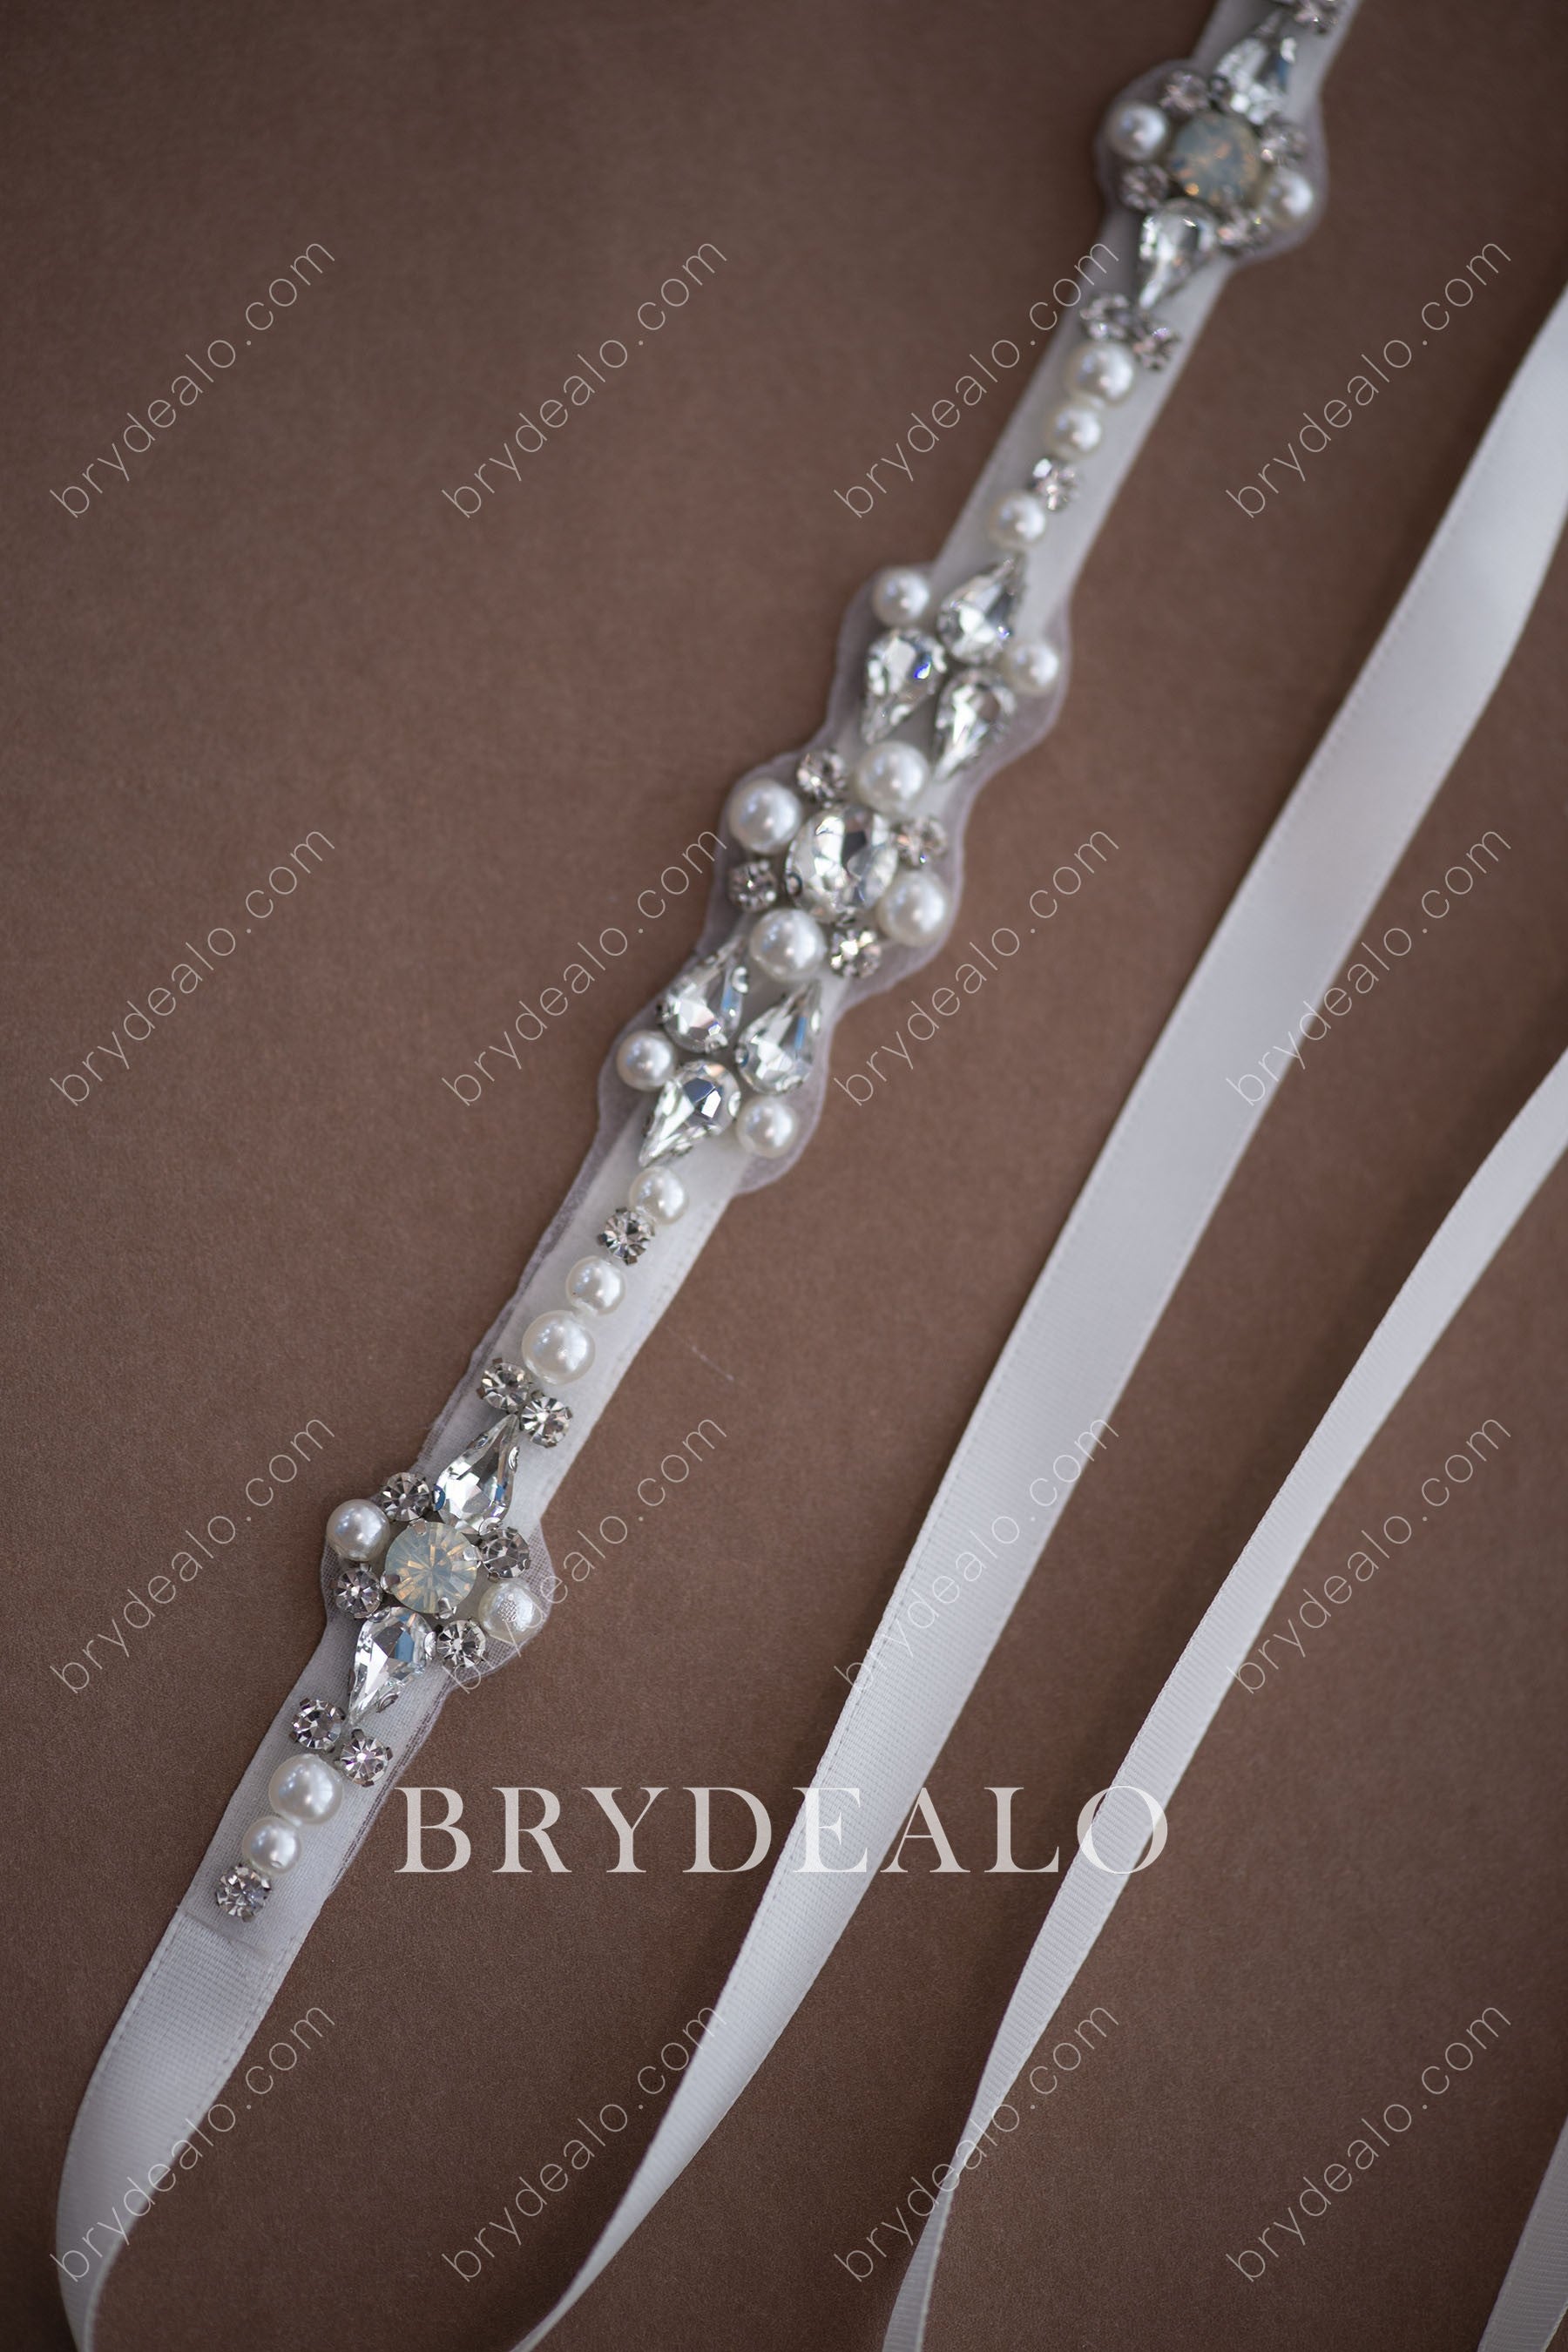 Wholesale Glamorous Pearls Crystals Bridal Sash